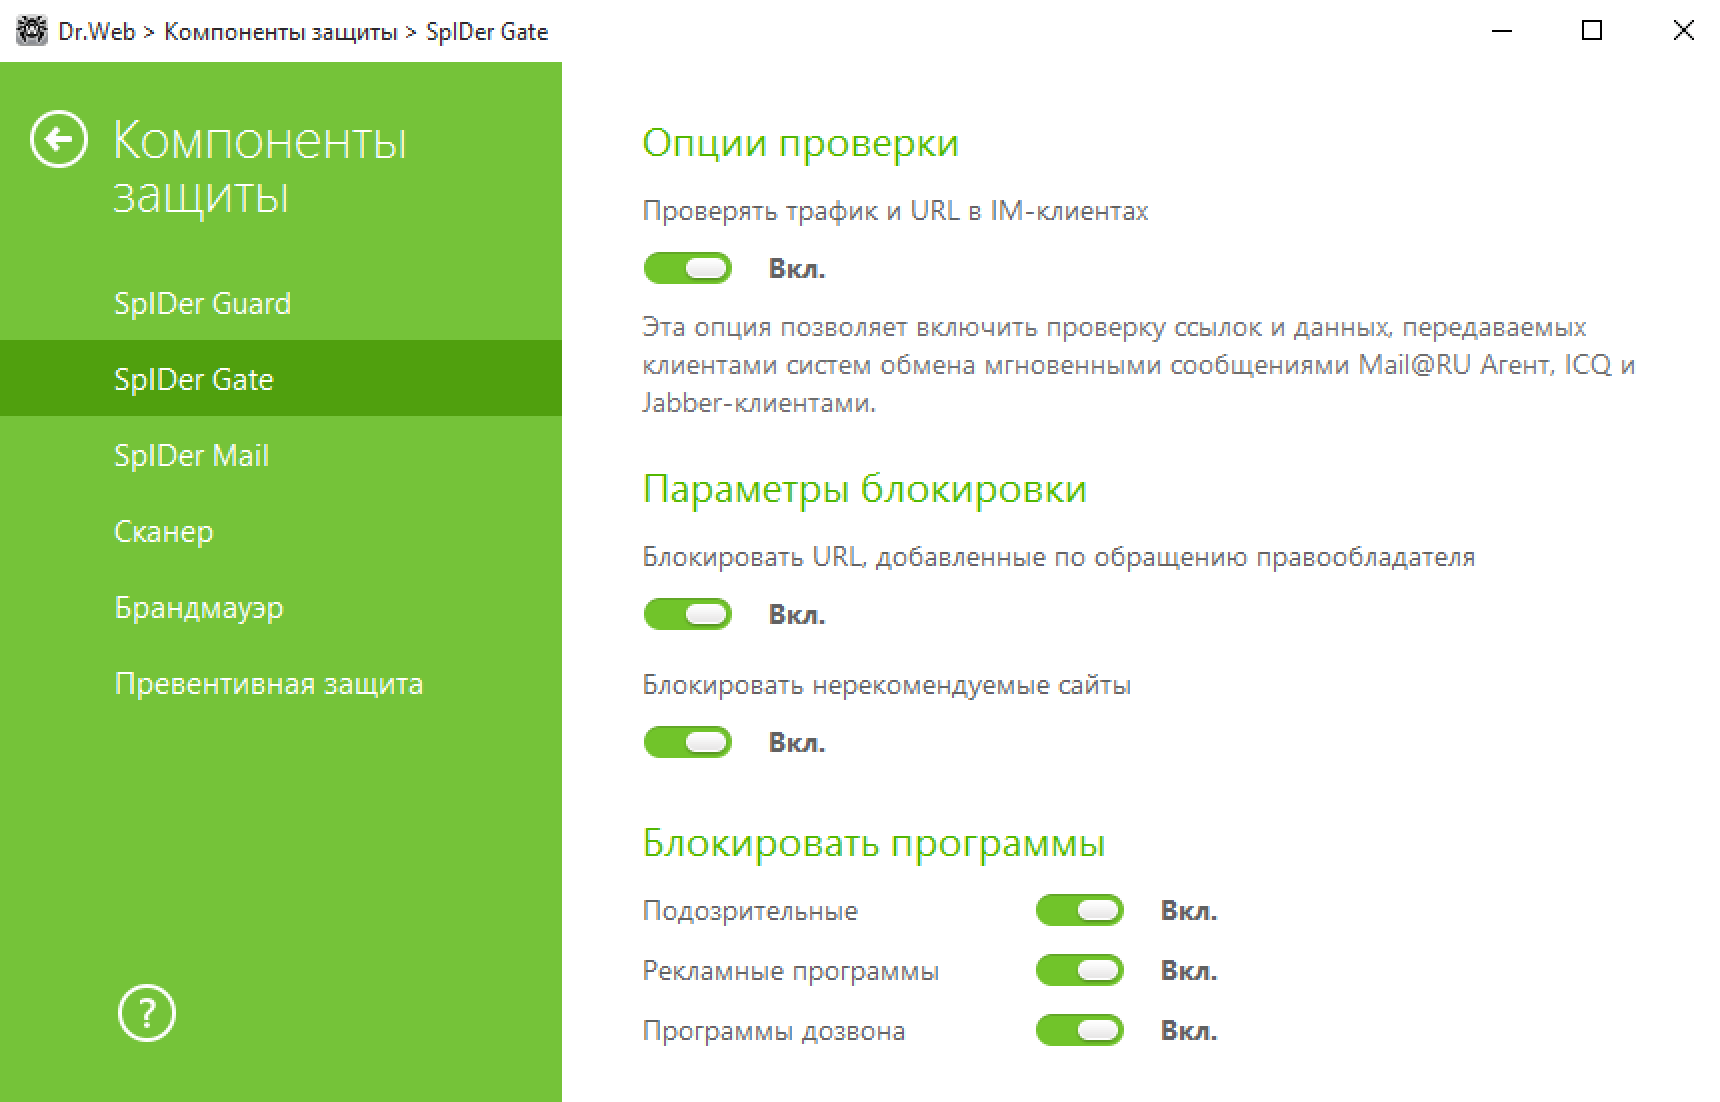 Настройки в Dr.Web тоже представлены в виде тумблеров, но не всегда в интерфейсе есть описание опции. Источник: drweb.ru